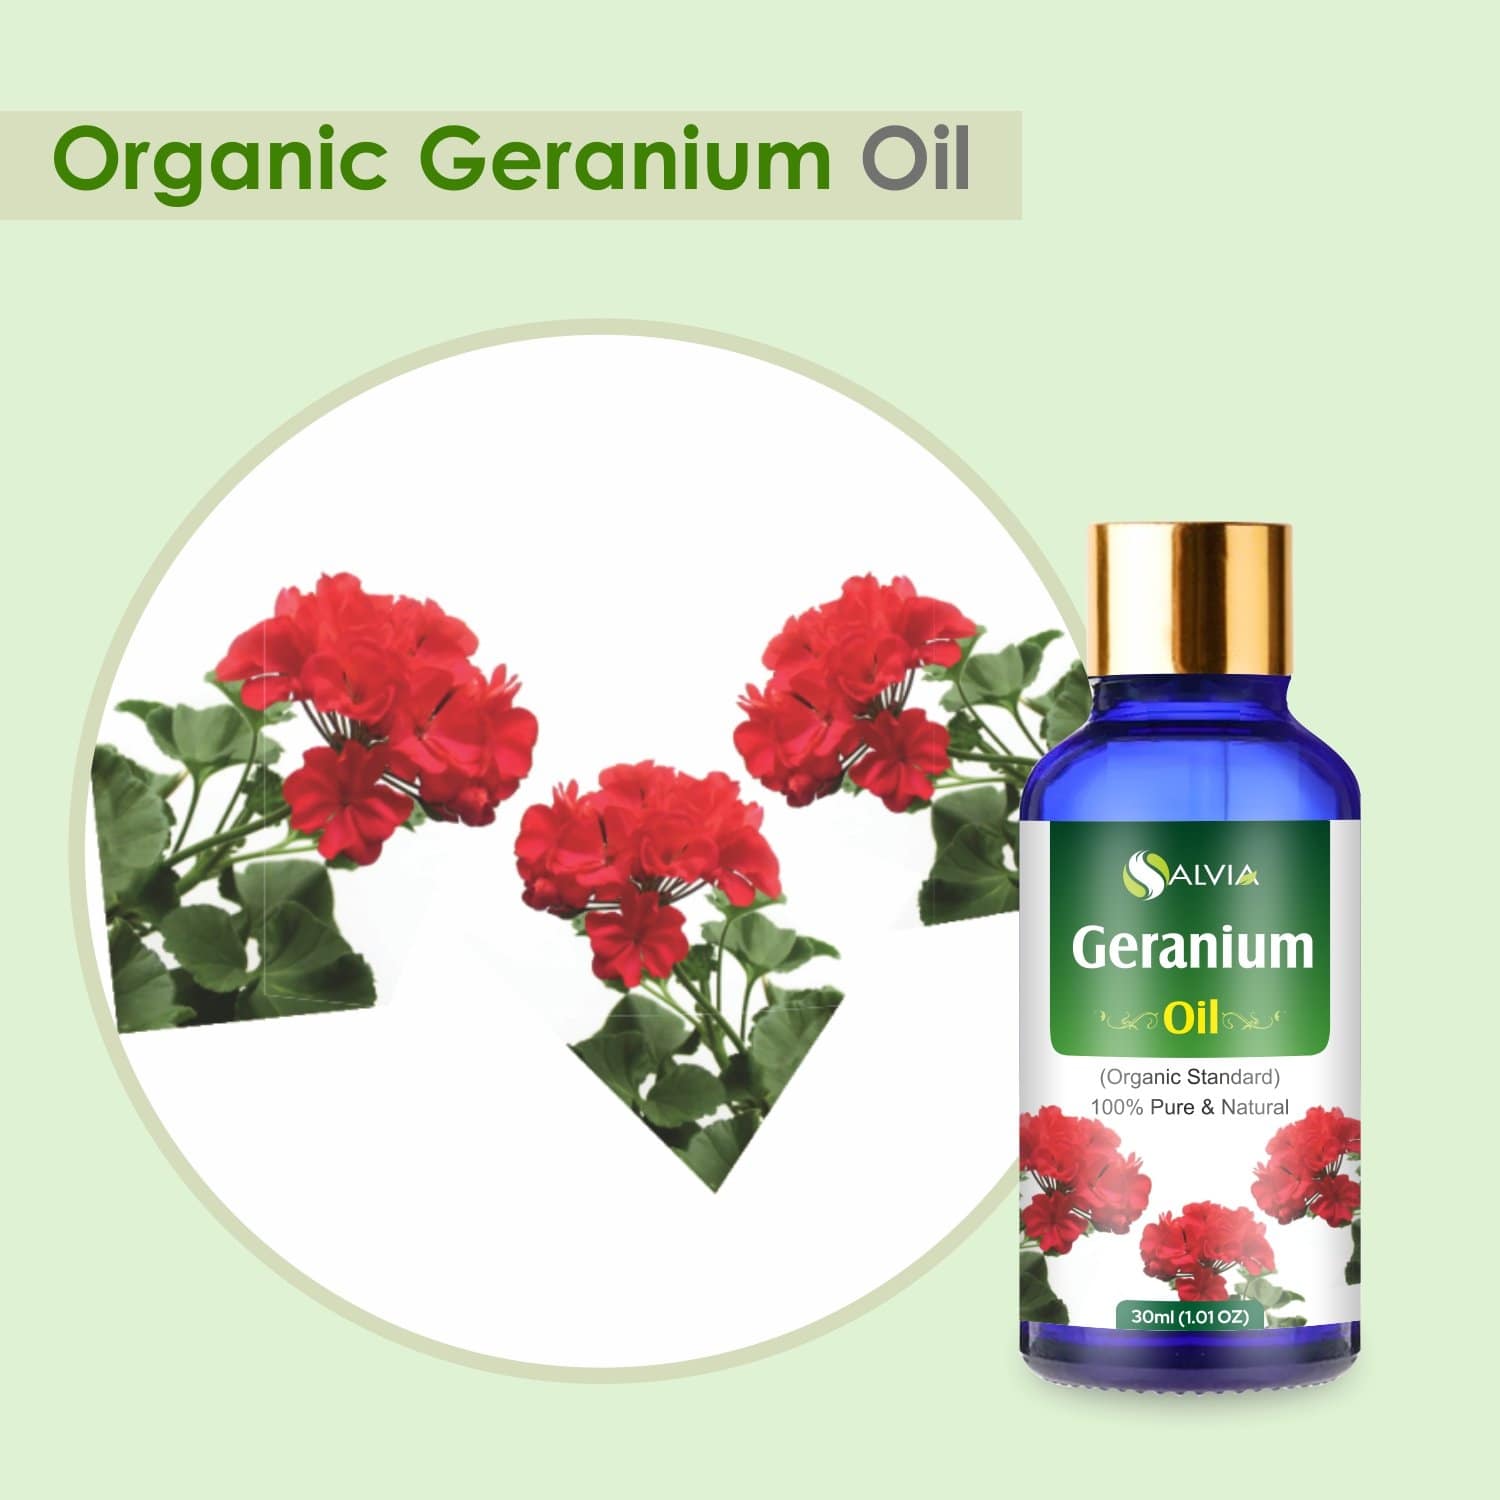 Organic Geranium Essential Oil benefits 